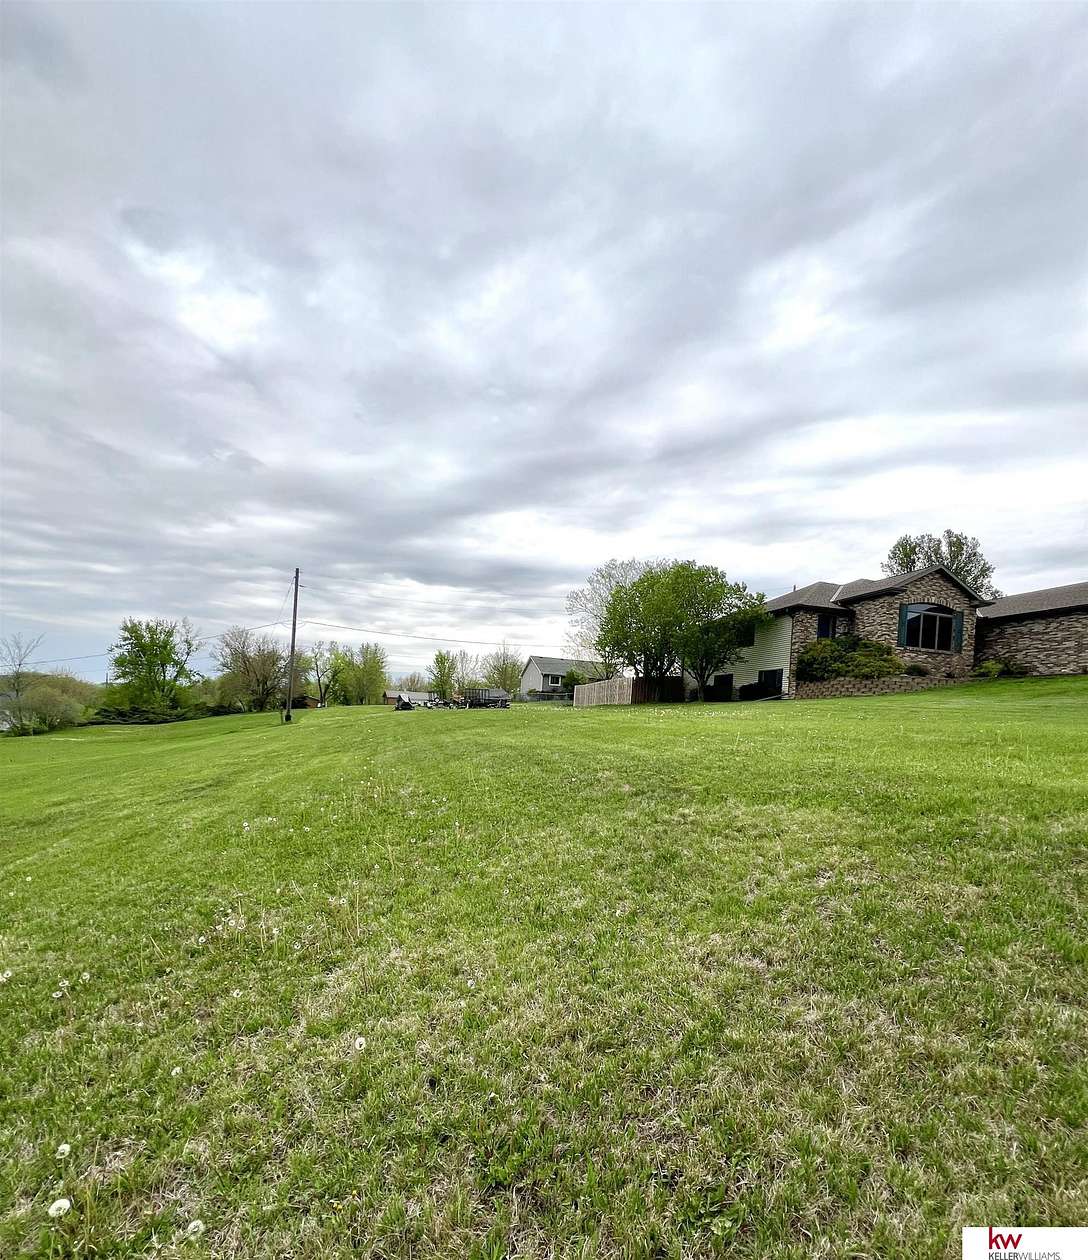 0.24 Acres of Residential Land for Sale in Plattsmouth, Nebraska